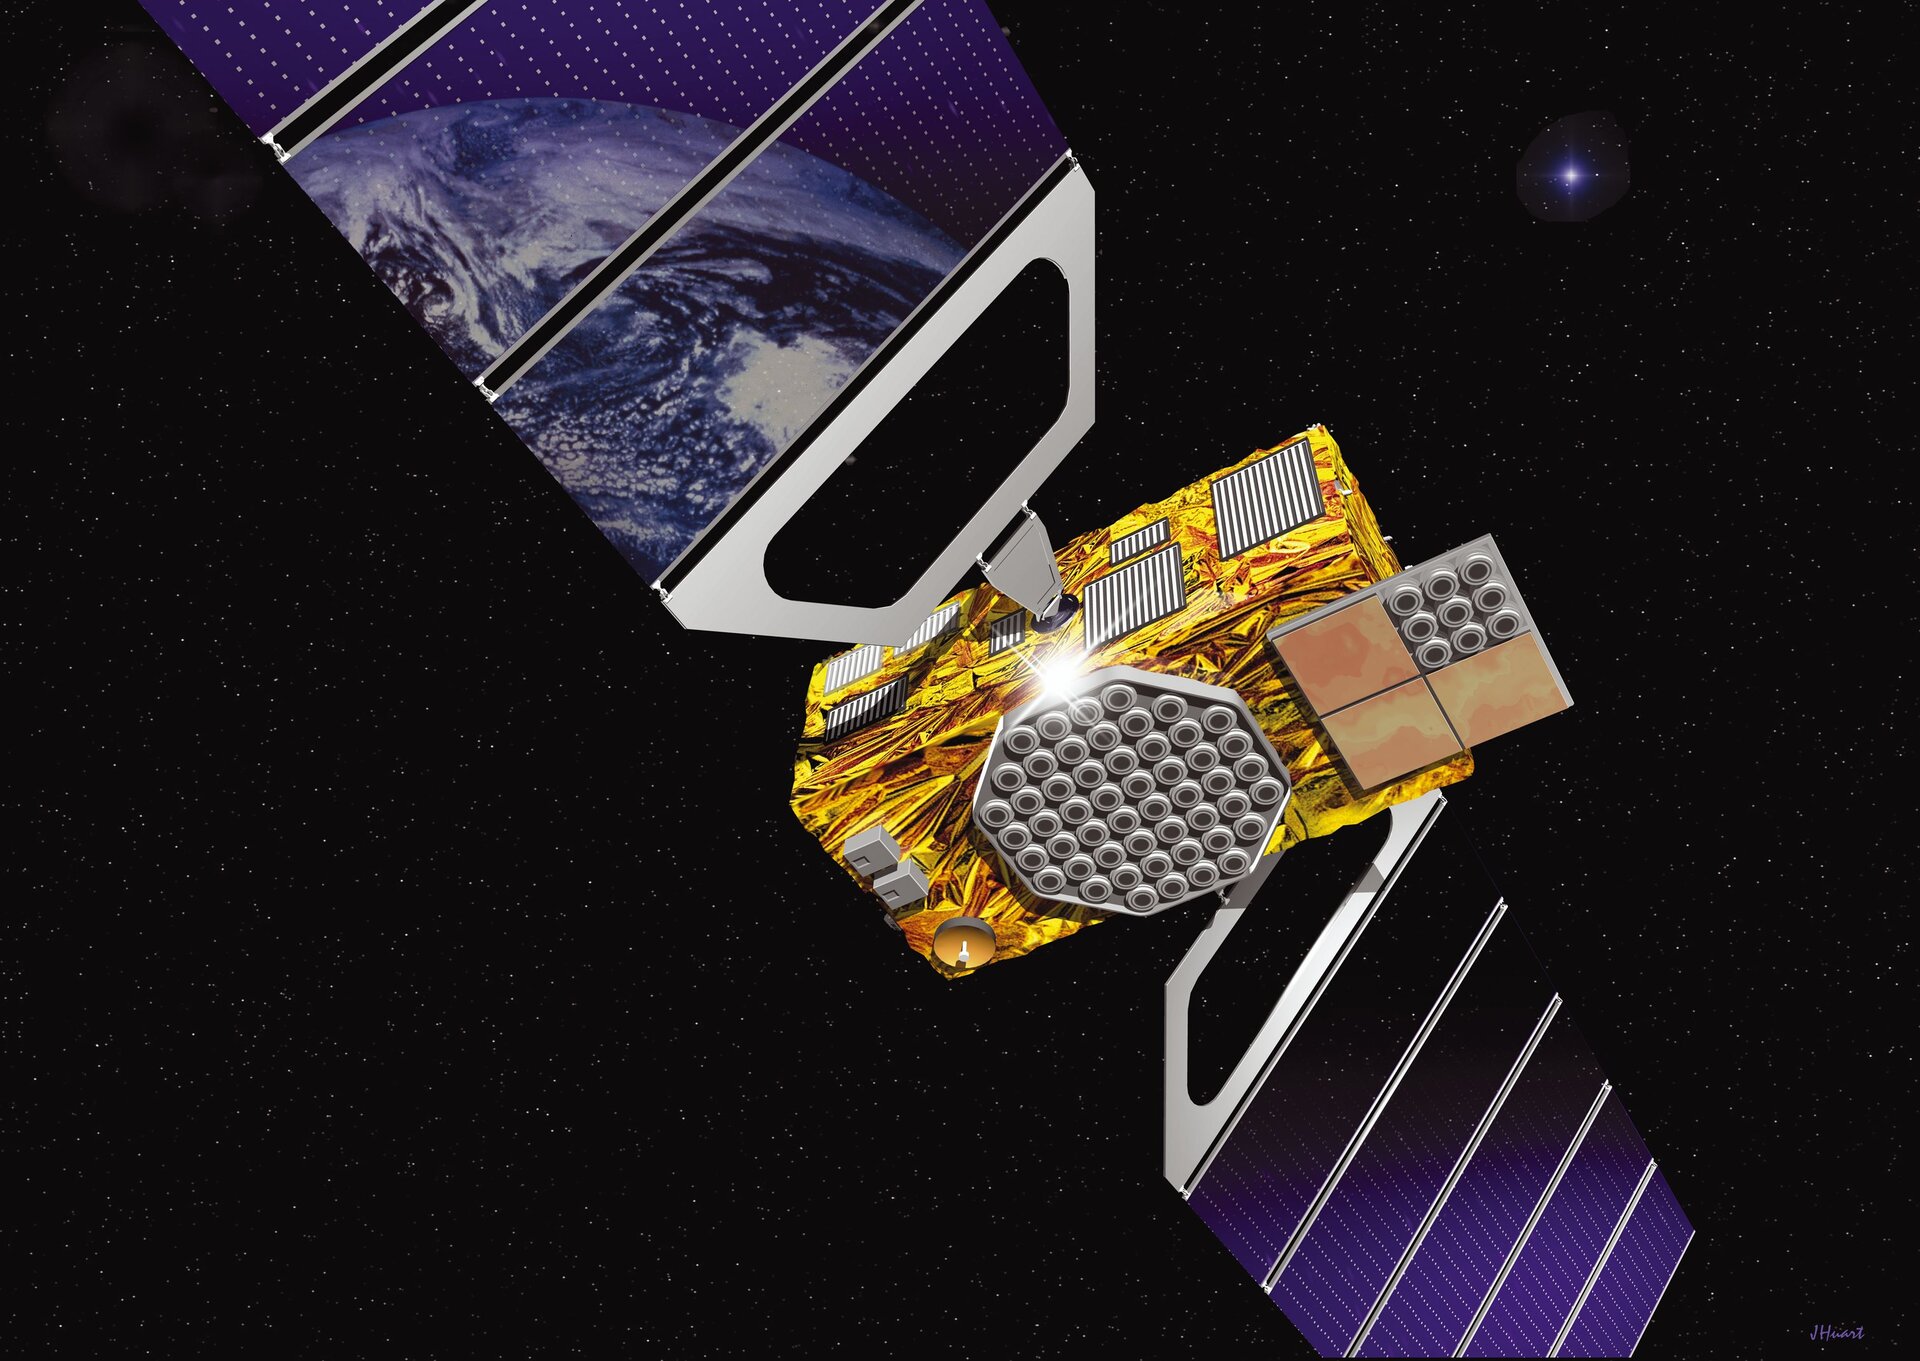 Galileo: End of Ariane 5 makes US aid inevitable